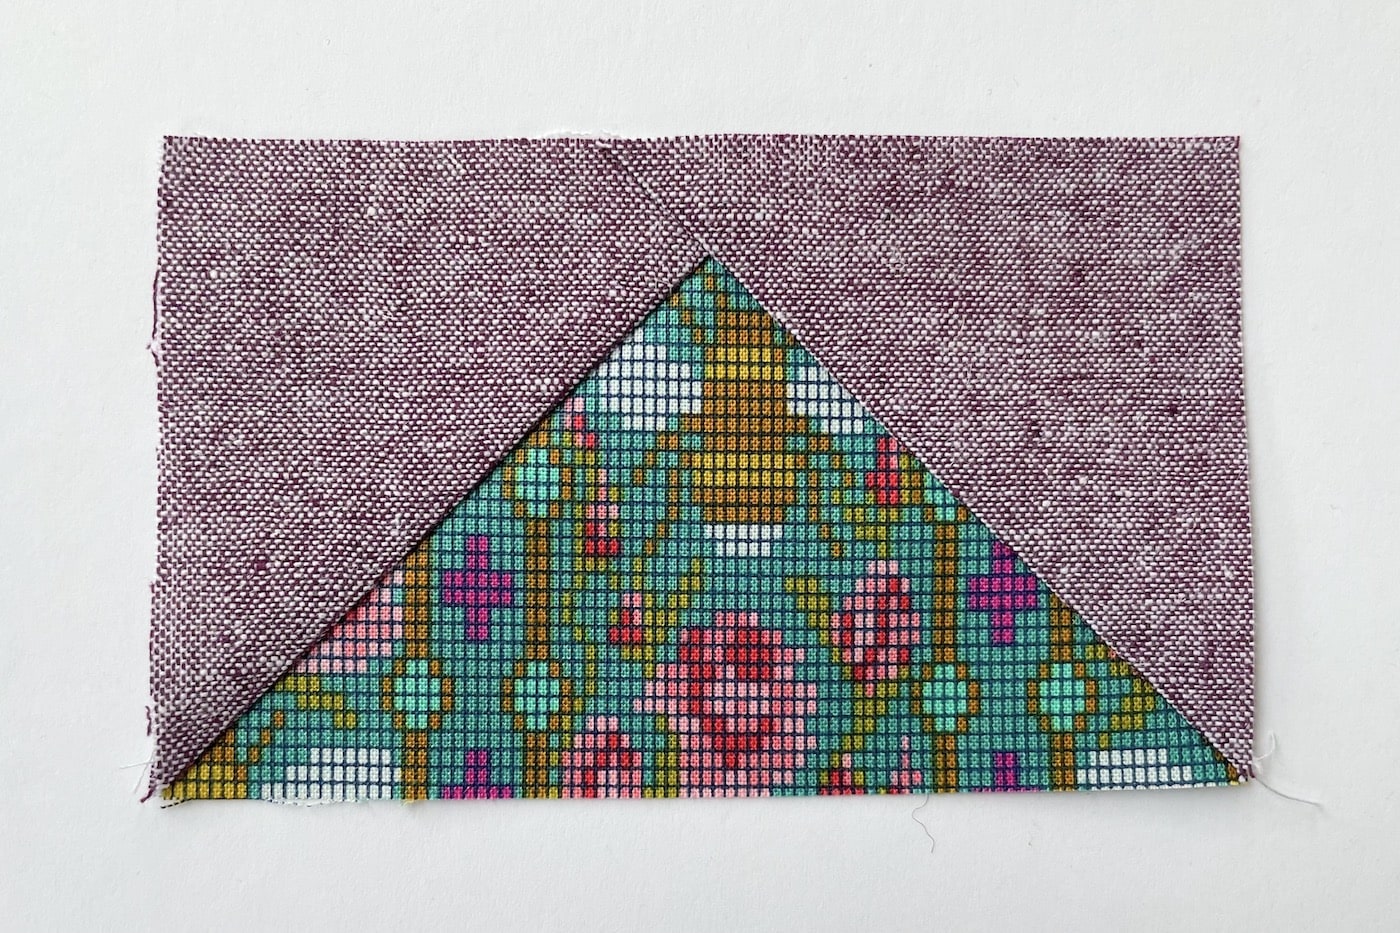 tissu violet et vert sur table blanche découpé en carrés et triangles